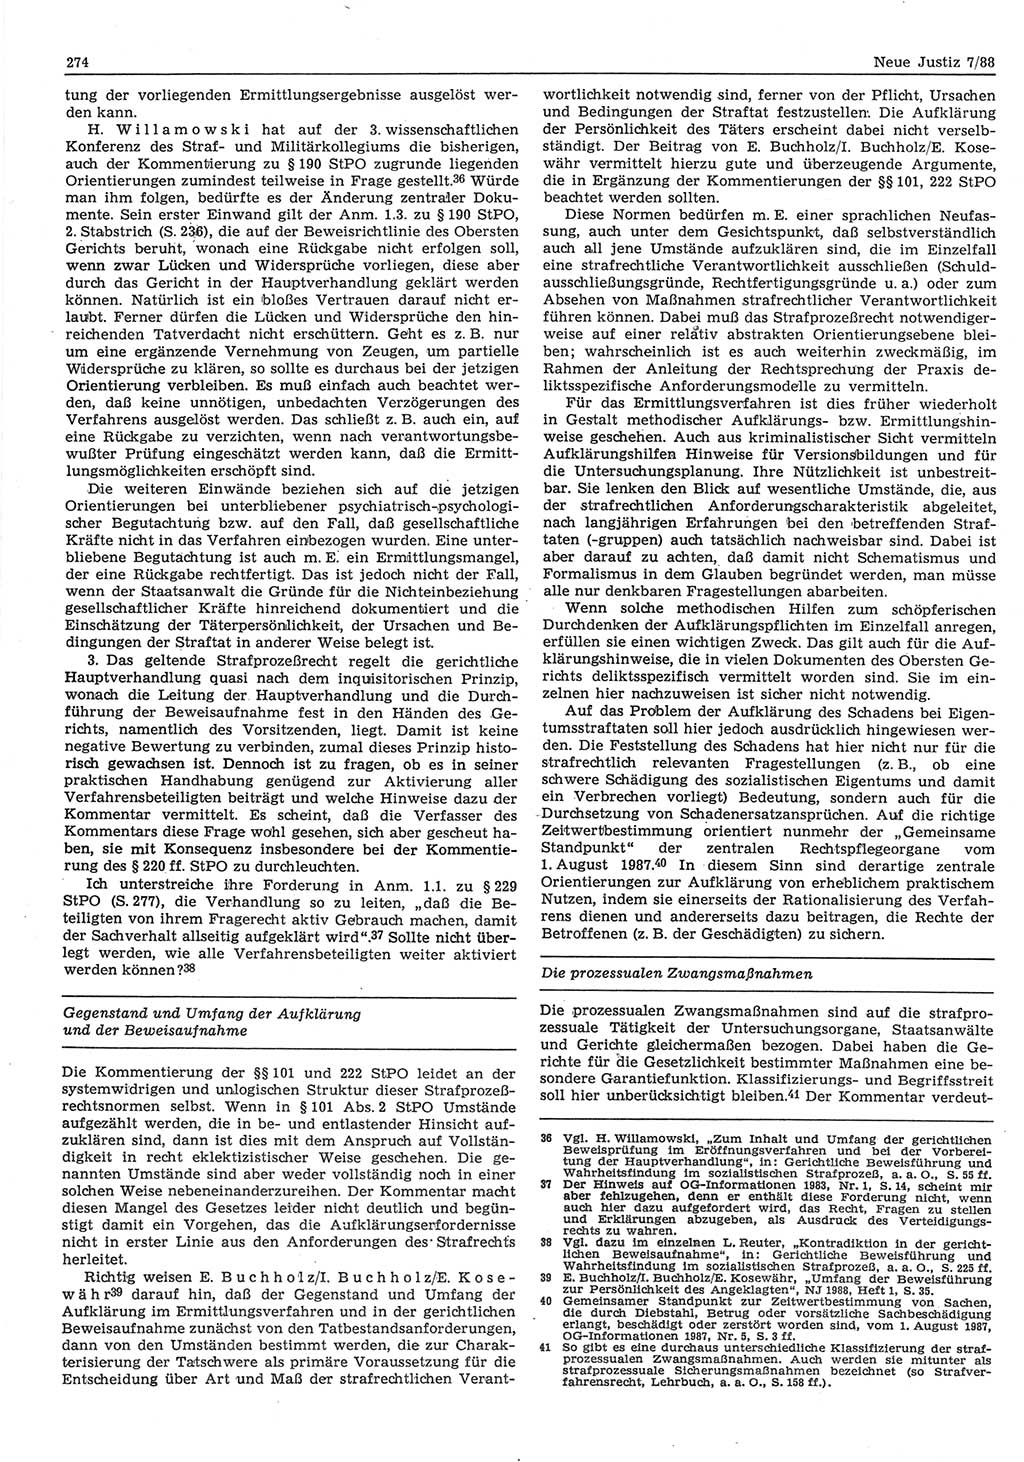 Neue Justiz (NJ), Zeitschrift für sozialistisches Recht und Gesetzlichkeit [Deutsche Demokratische Republik (DDR)], 42. Jahrgang 1988, Seite 274 (NJ DDR 1988, S. 274)